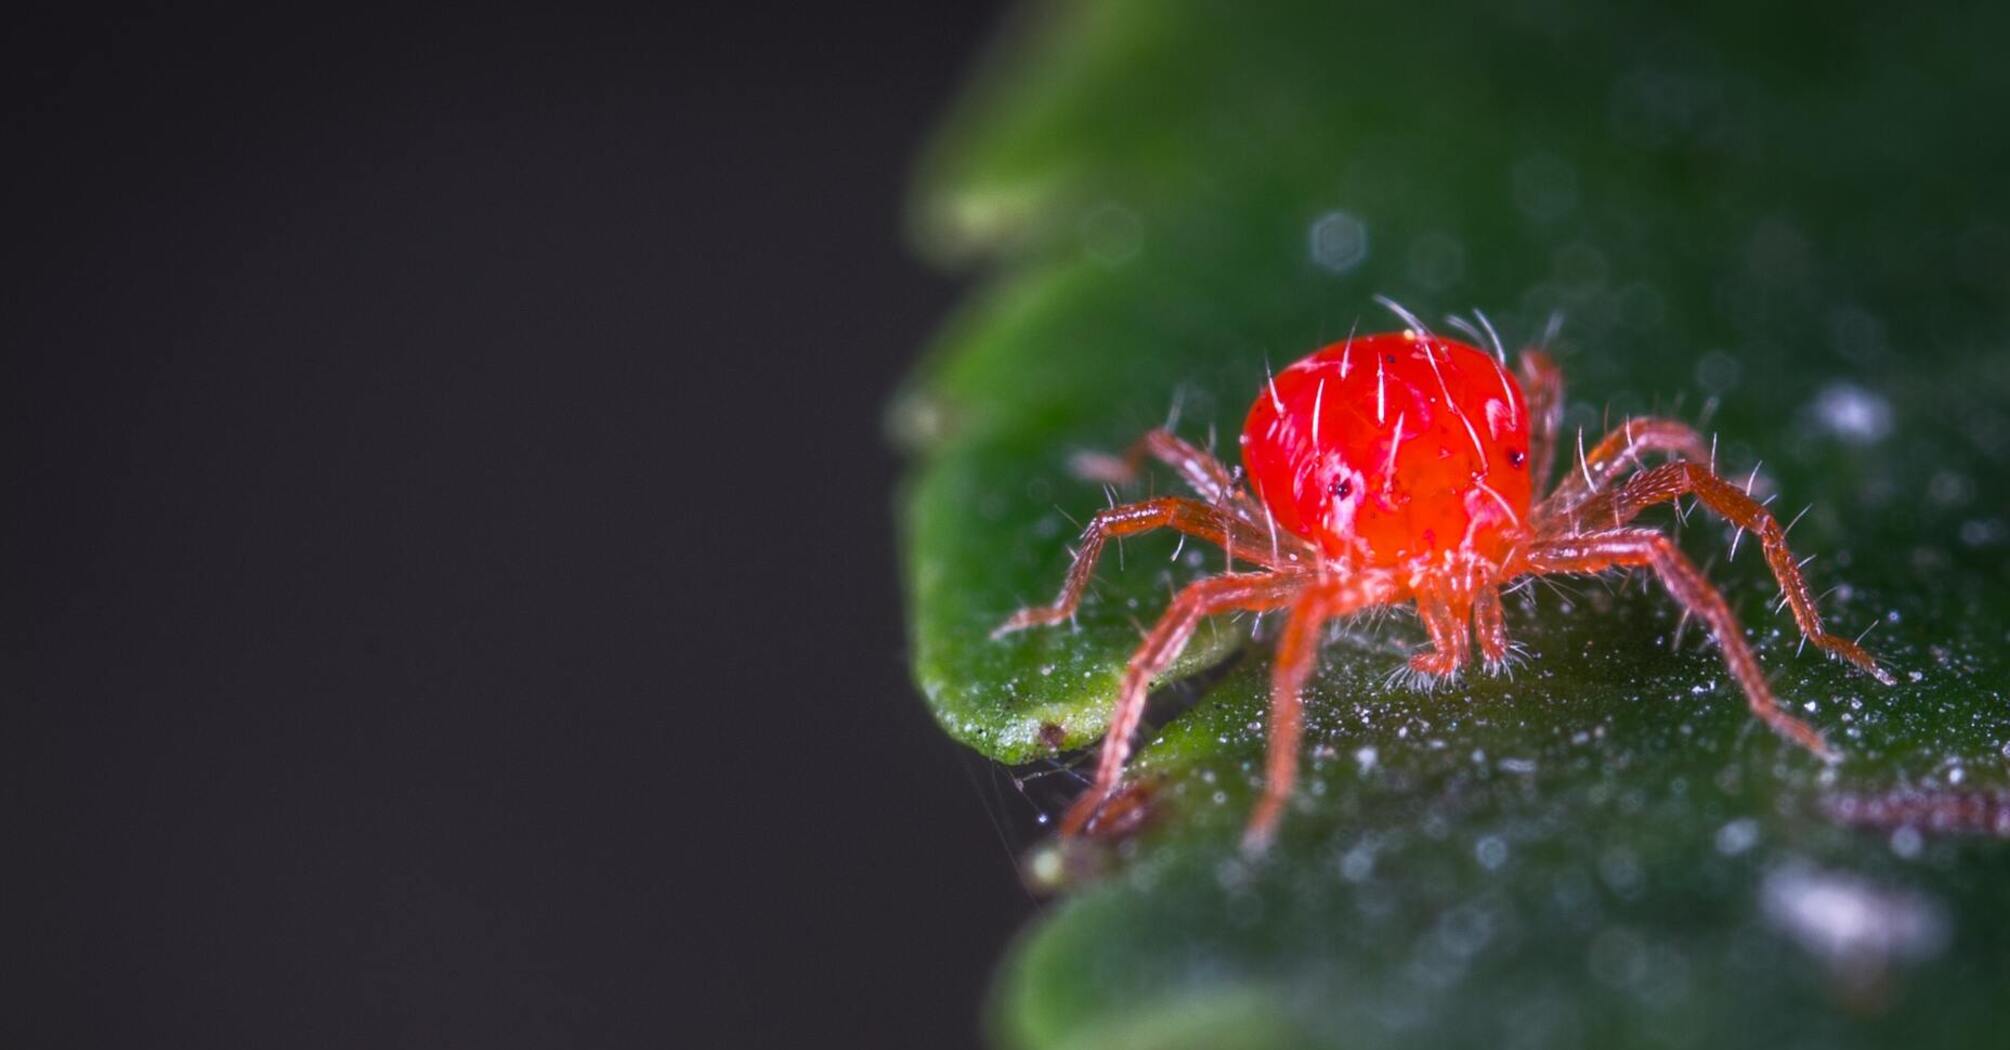 Ред спайдер. Красный паук клещ. Ярко красный паук. Паук реда. Супер маленький красный паук.